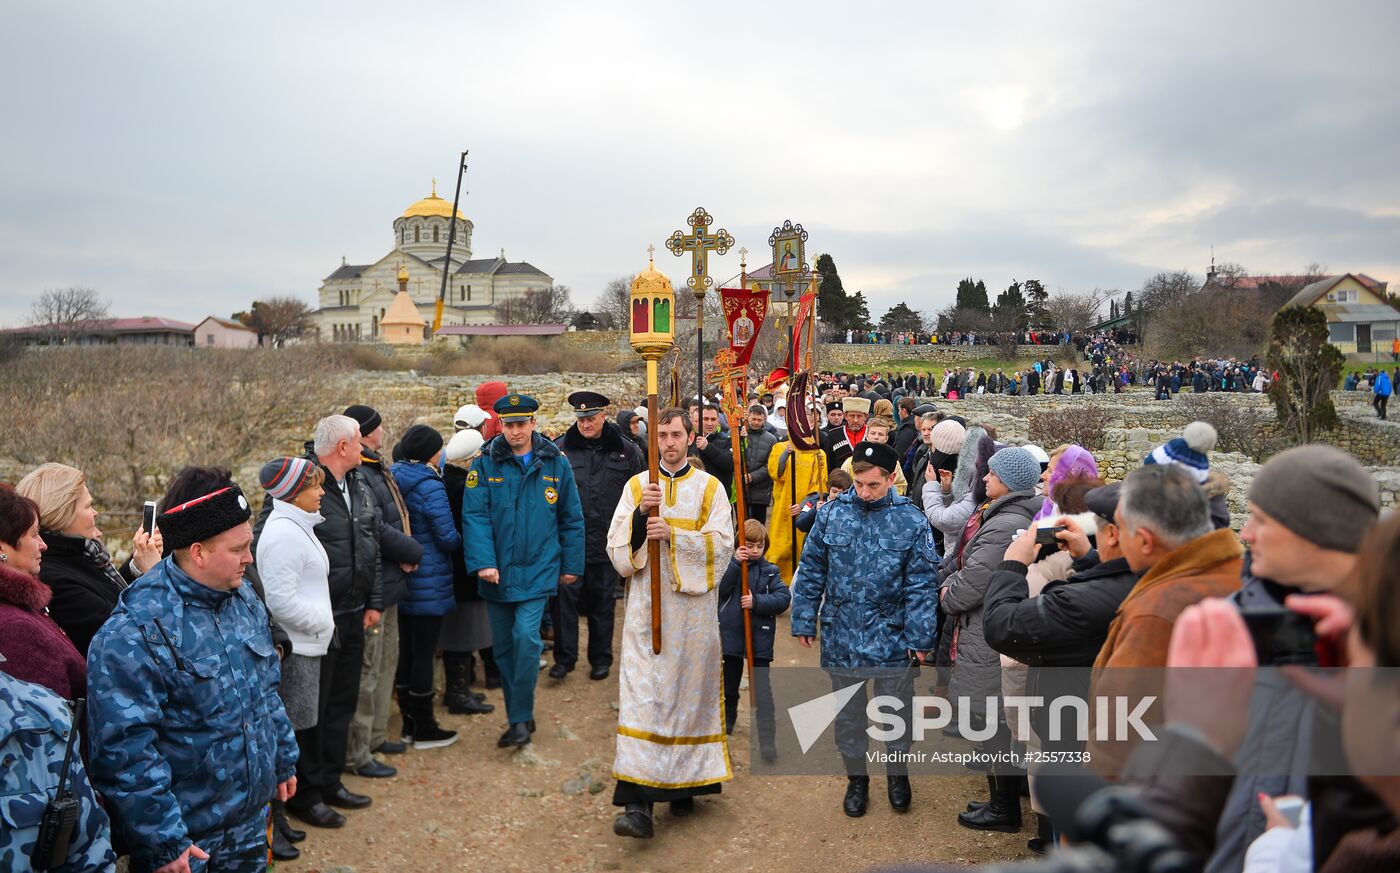 Epithany celebrated in Sevastopol